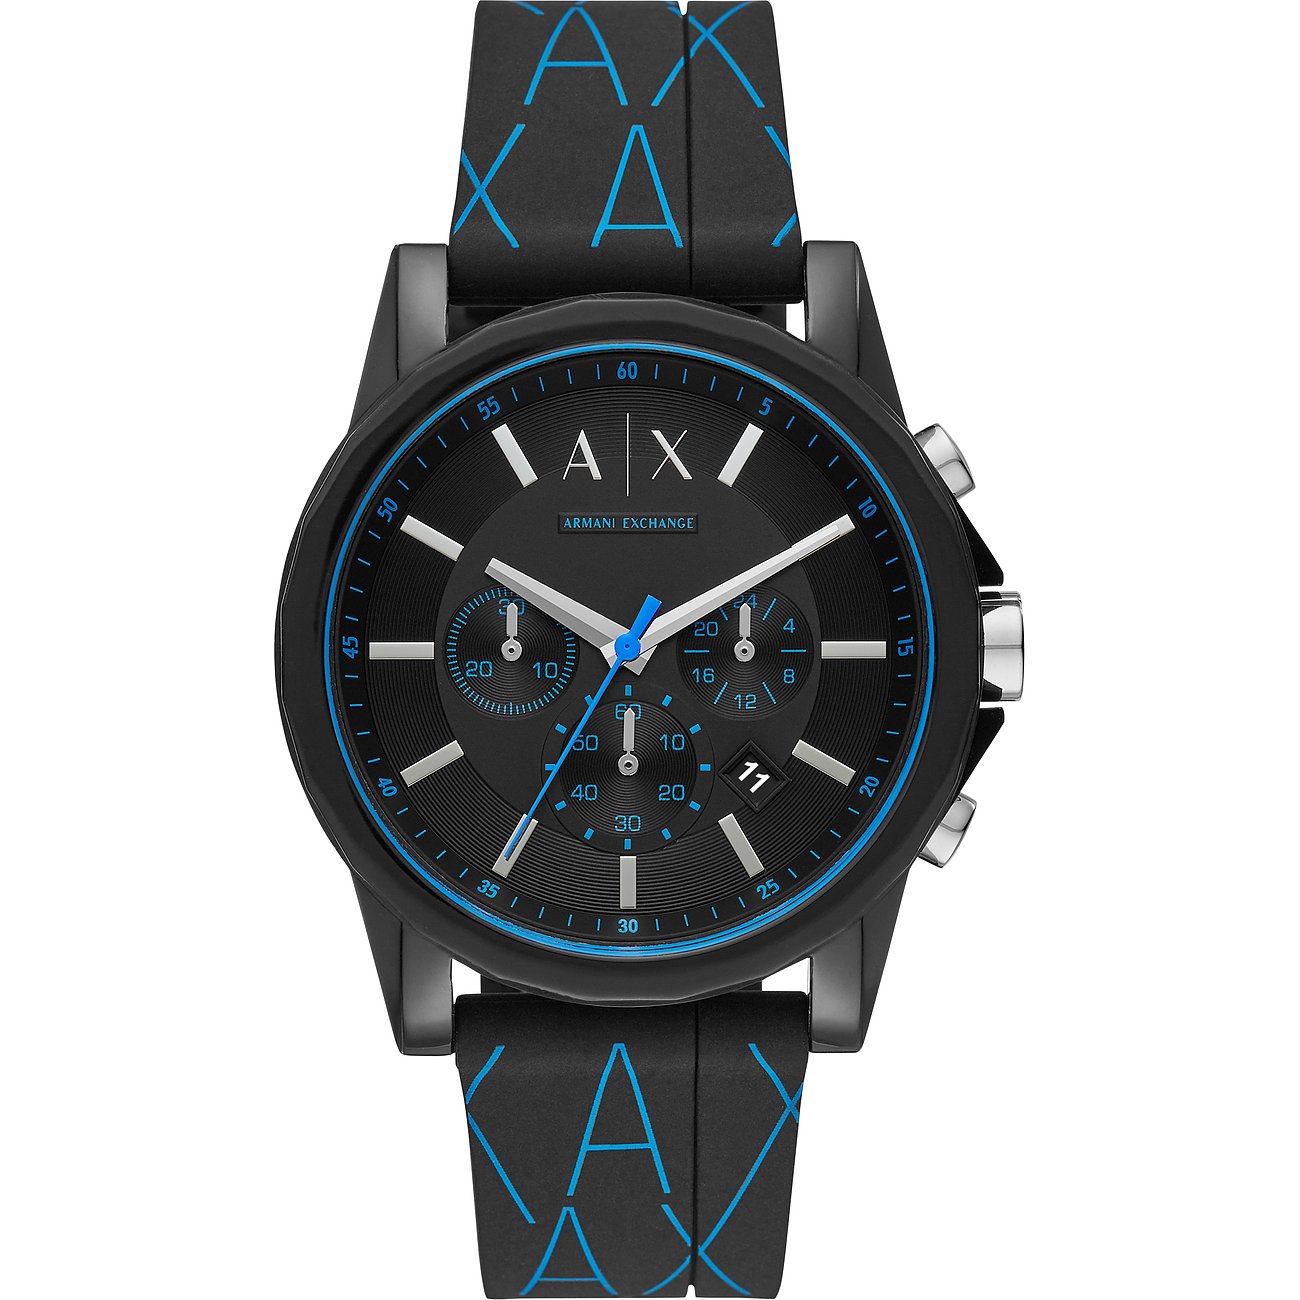 ARMANI EXCHANGE Herren Chronograph Quarz Uhr mit Silikon Armband AX1342